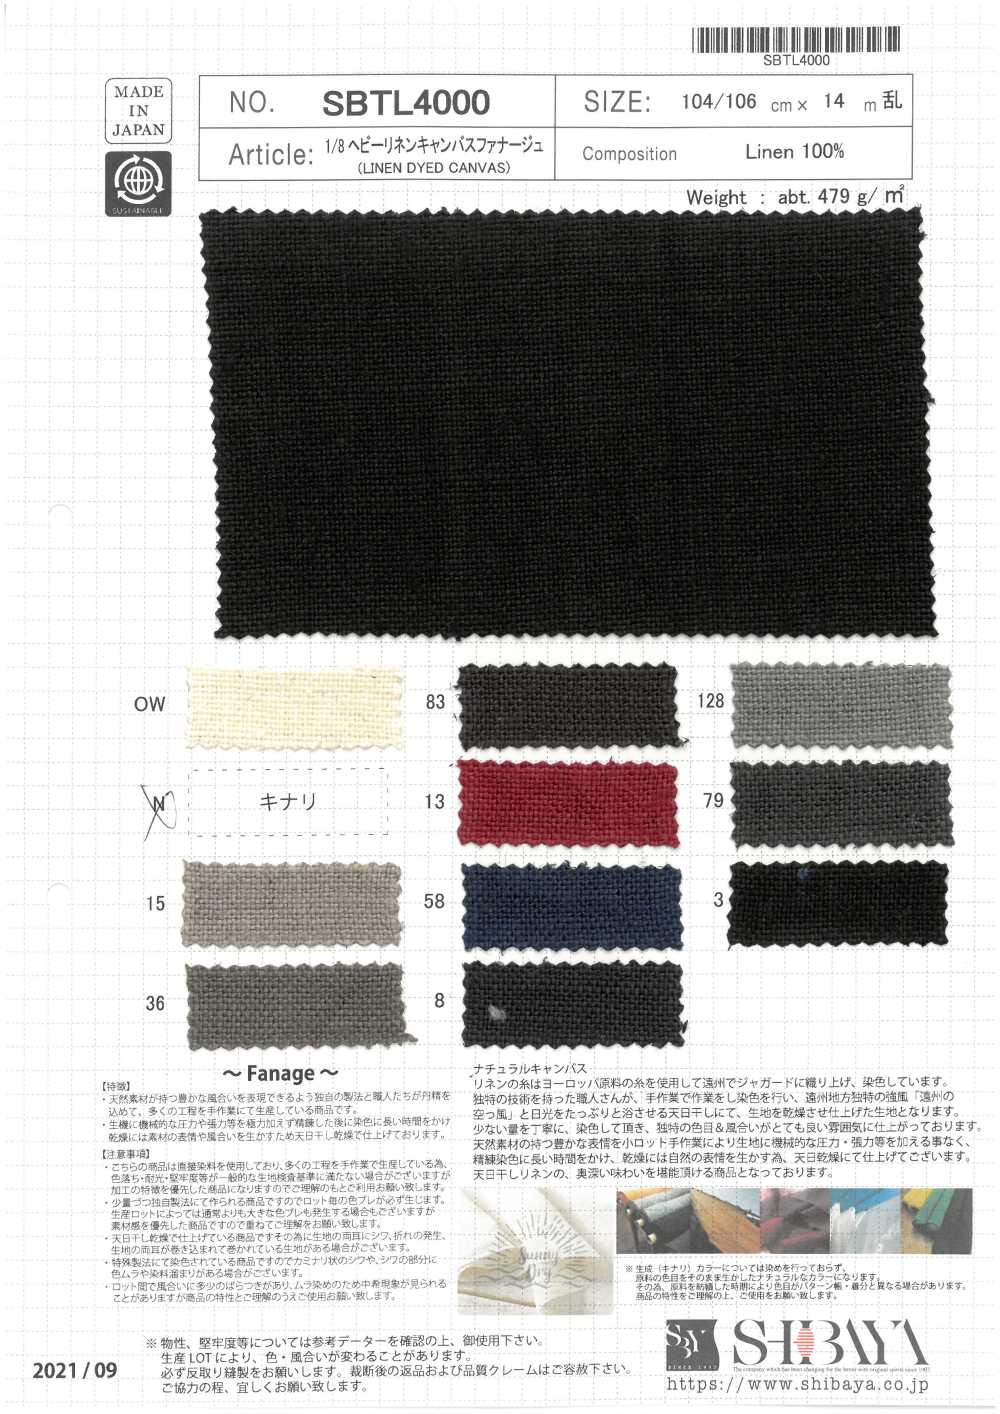 SBTL4000 1/8 Schwerleinen-Canvas-Fanage[Textilgewebe] SHIBAYA